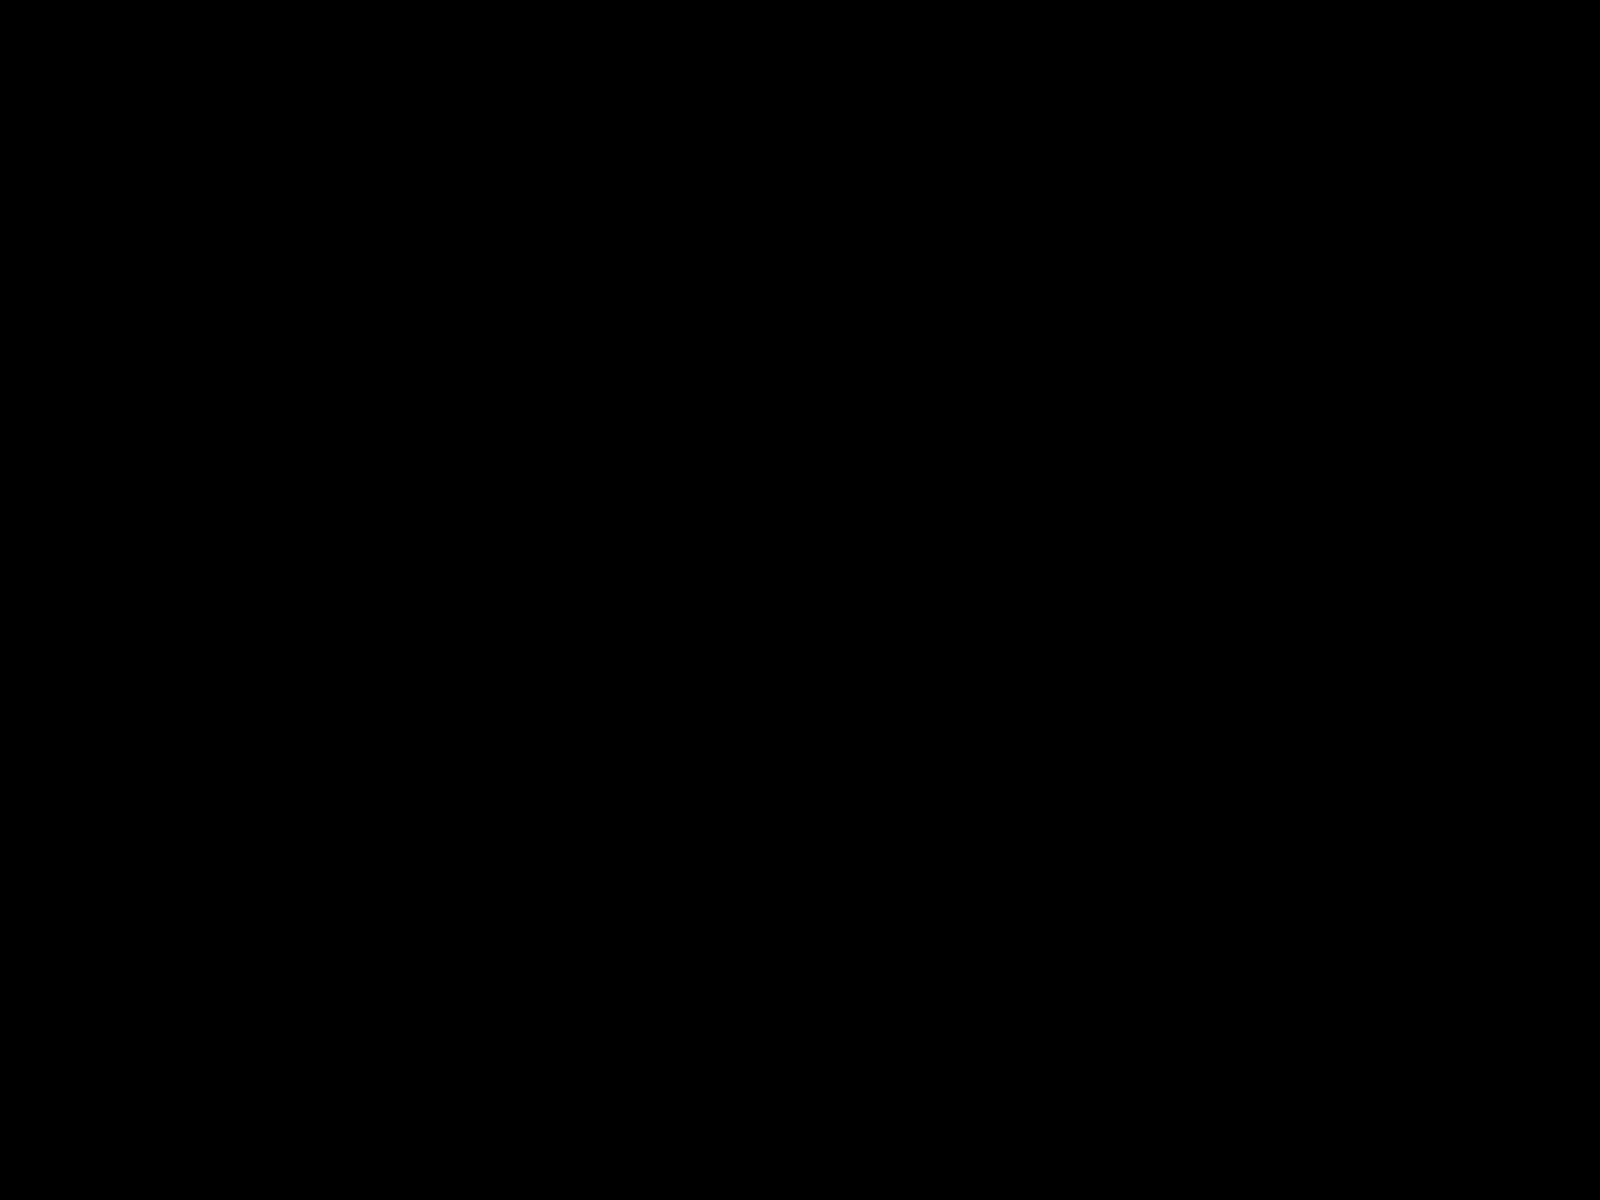 Aubergine logo